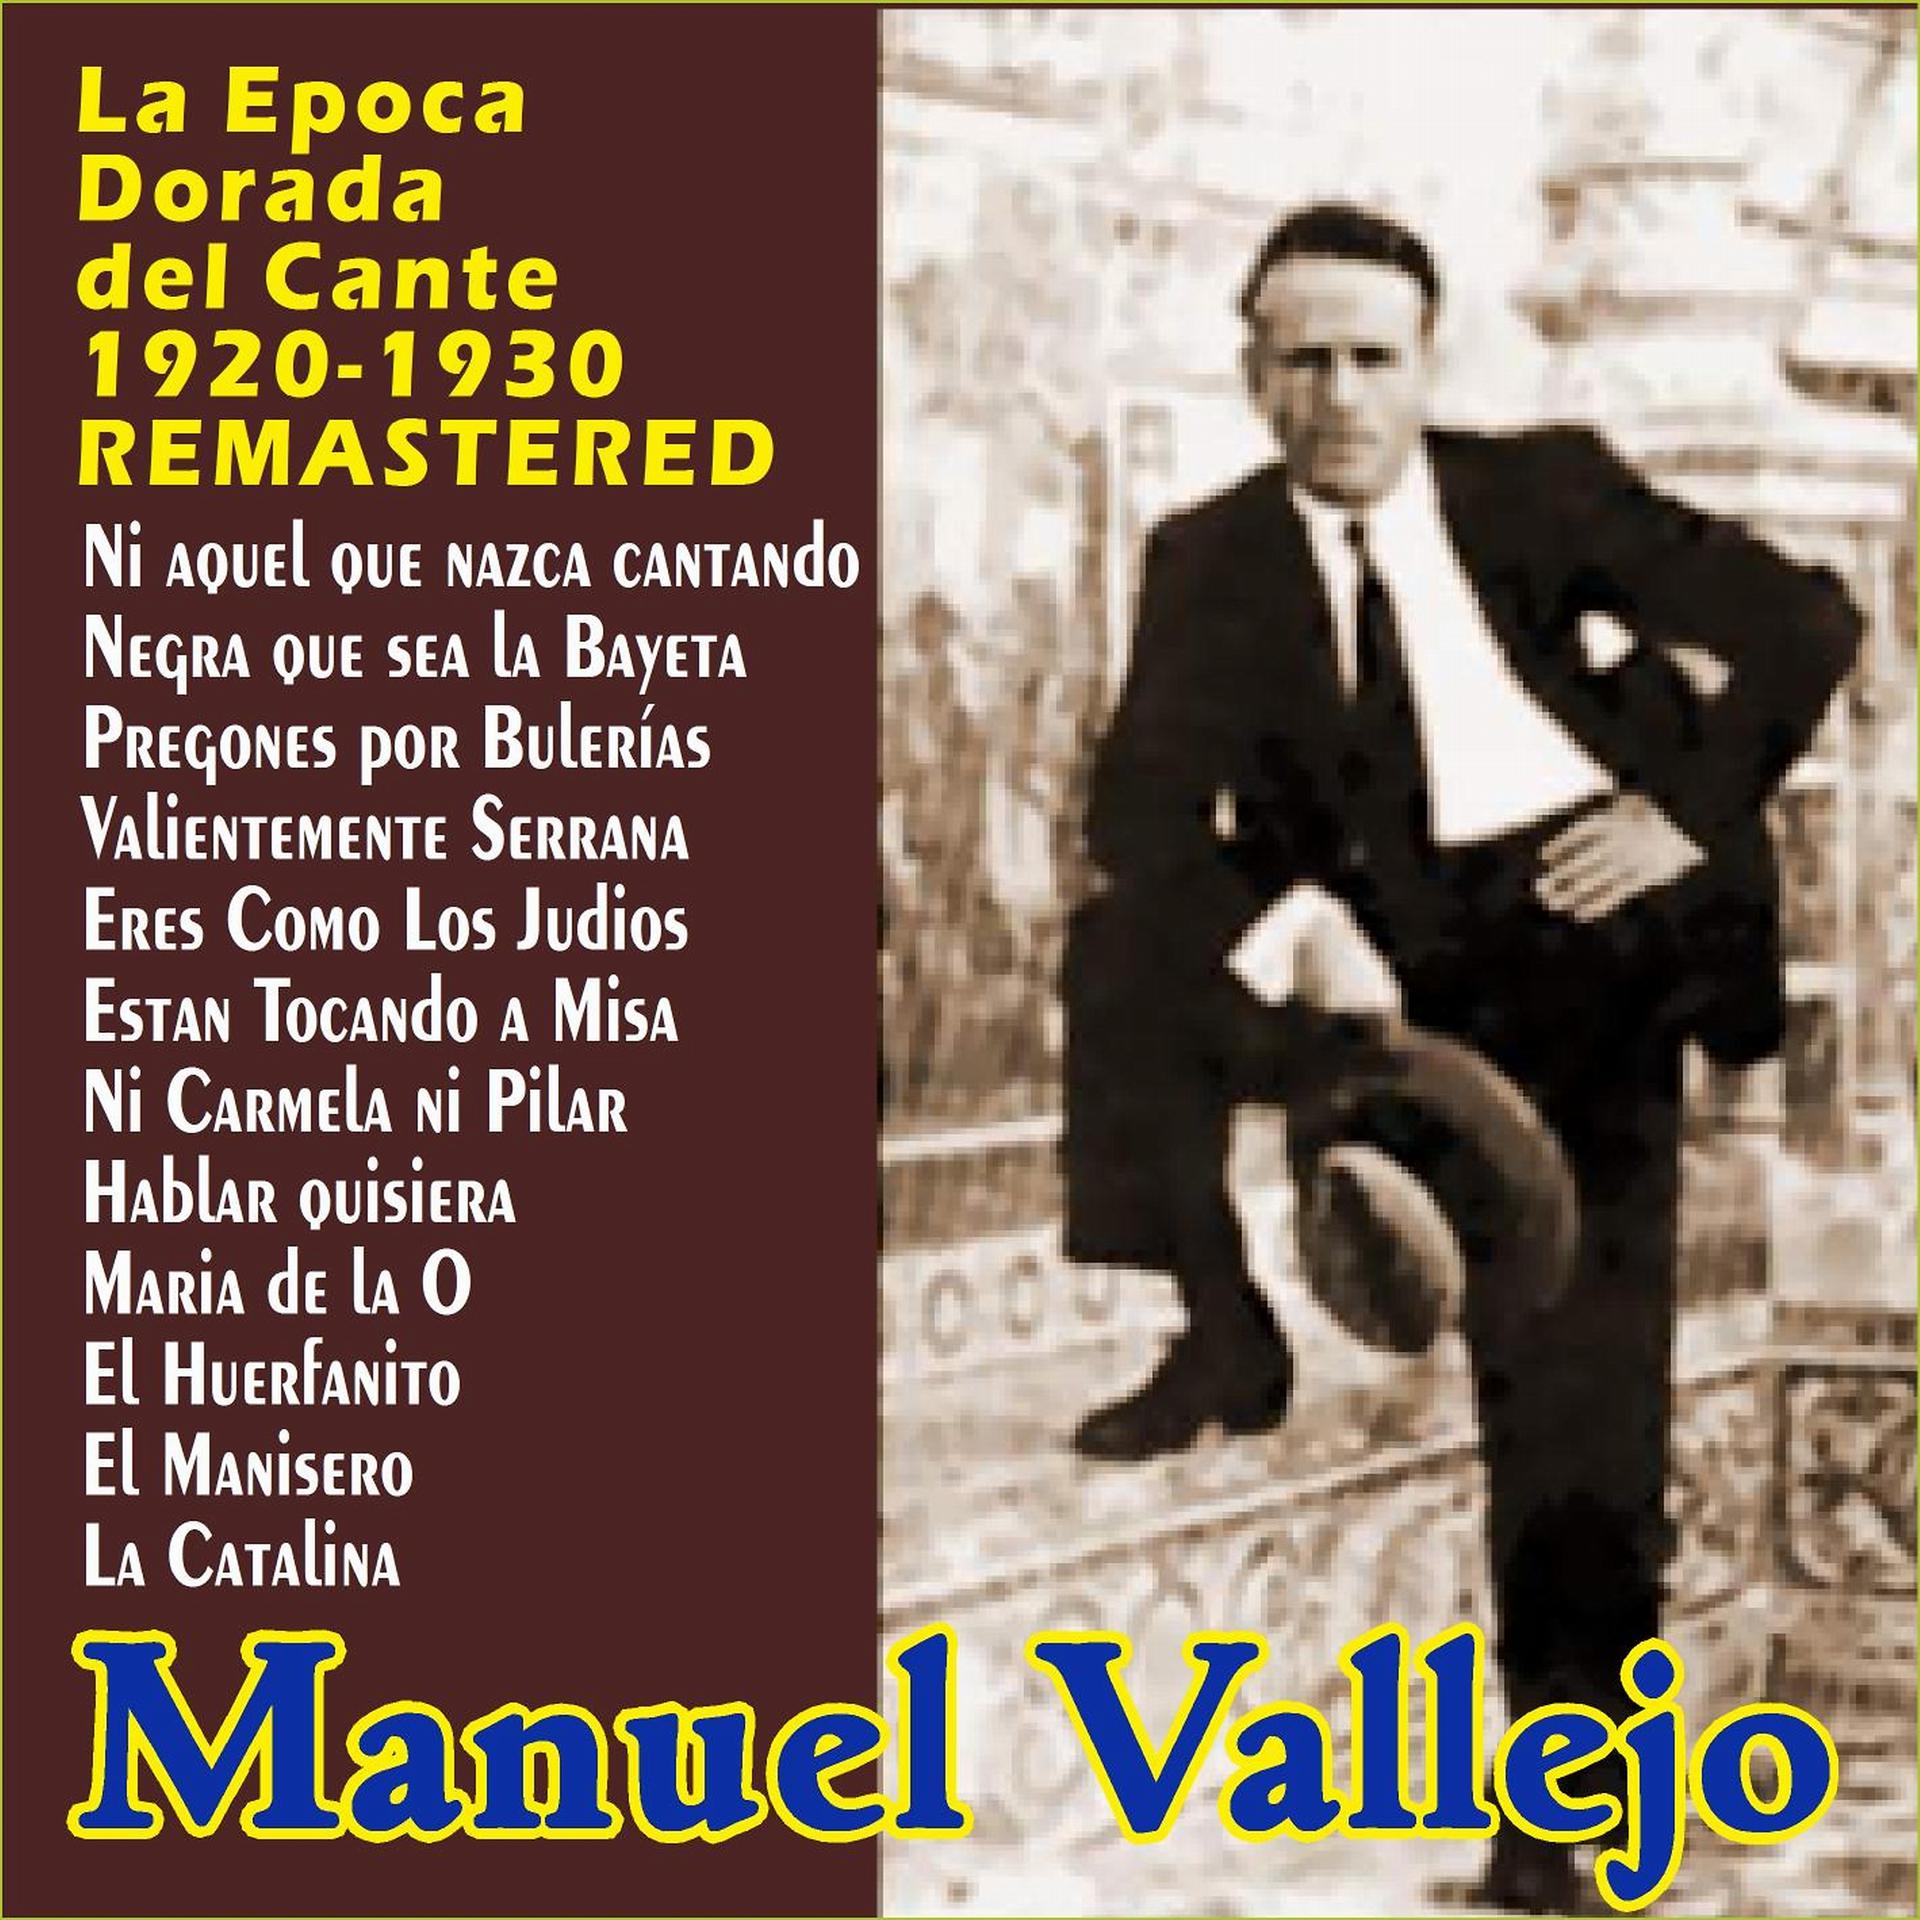 Постер альбома "La Epoca Dorada del Cante - 1920-1930 - Remastered